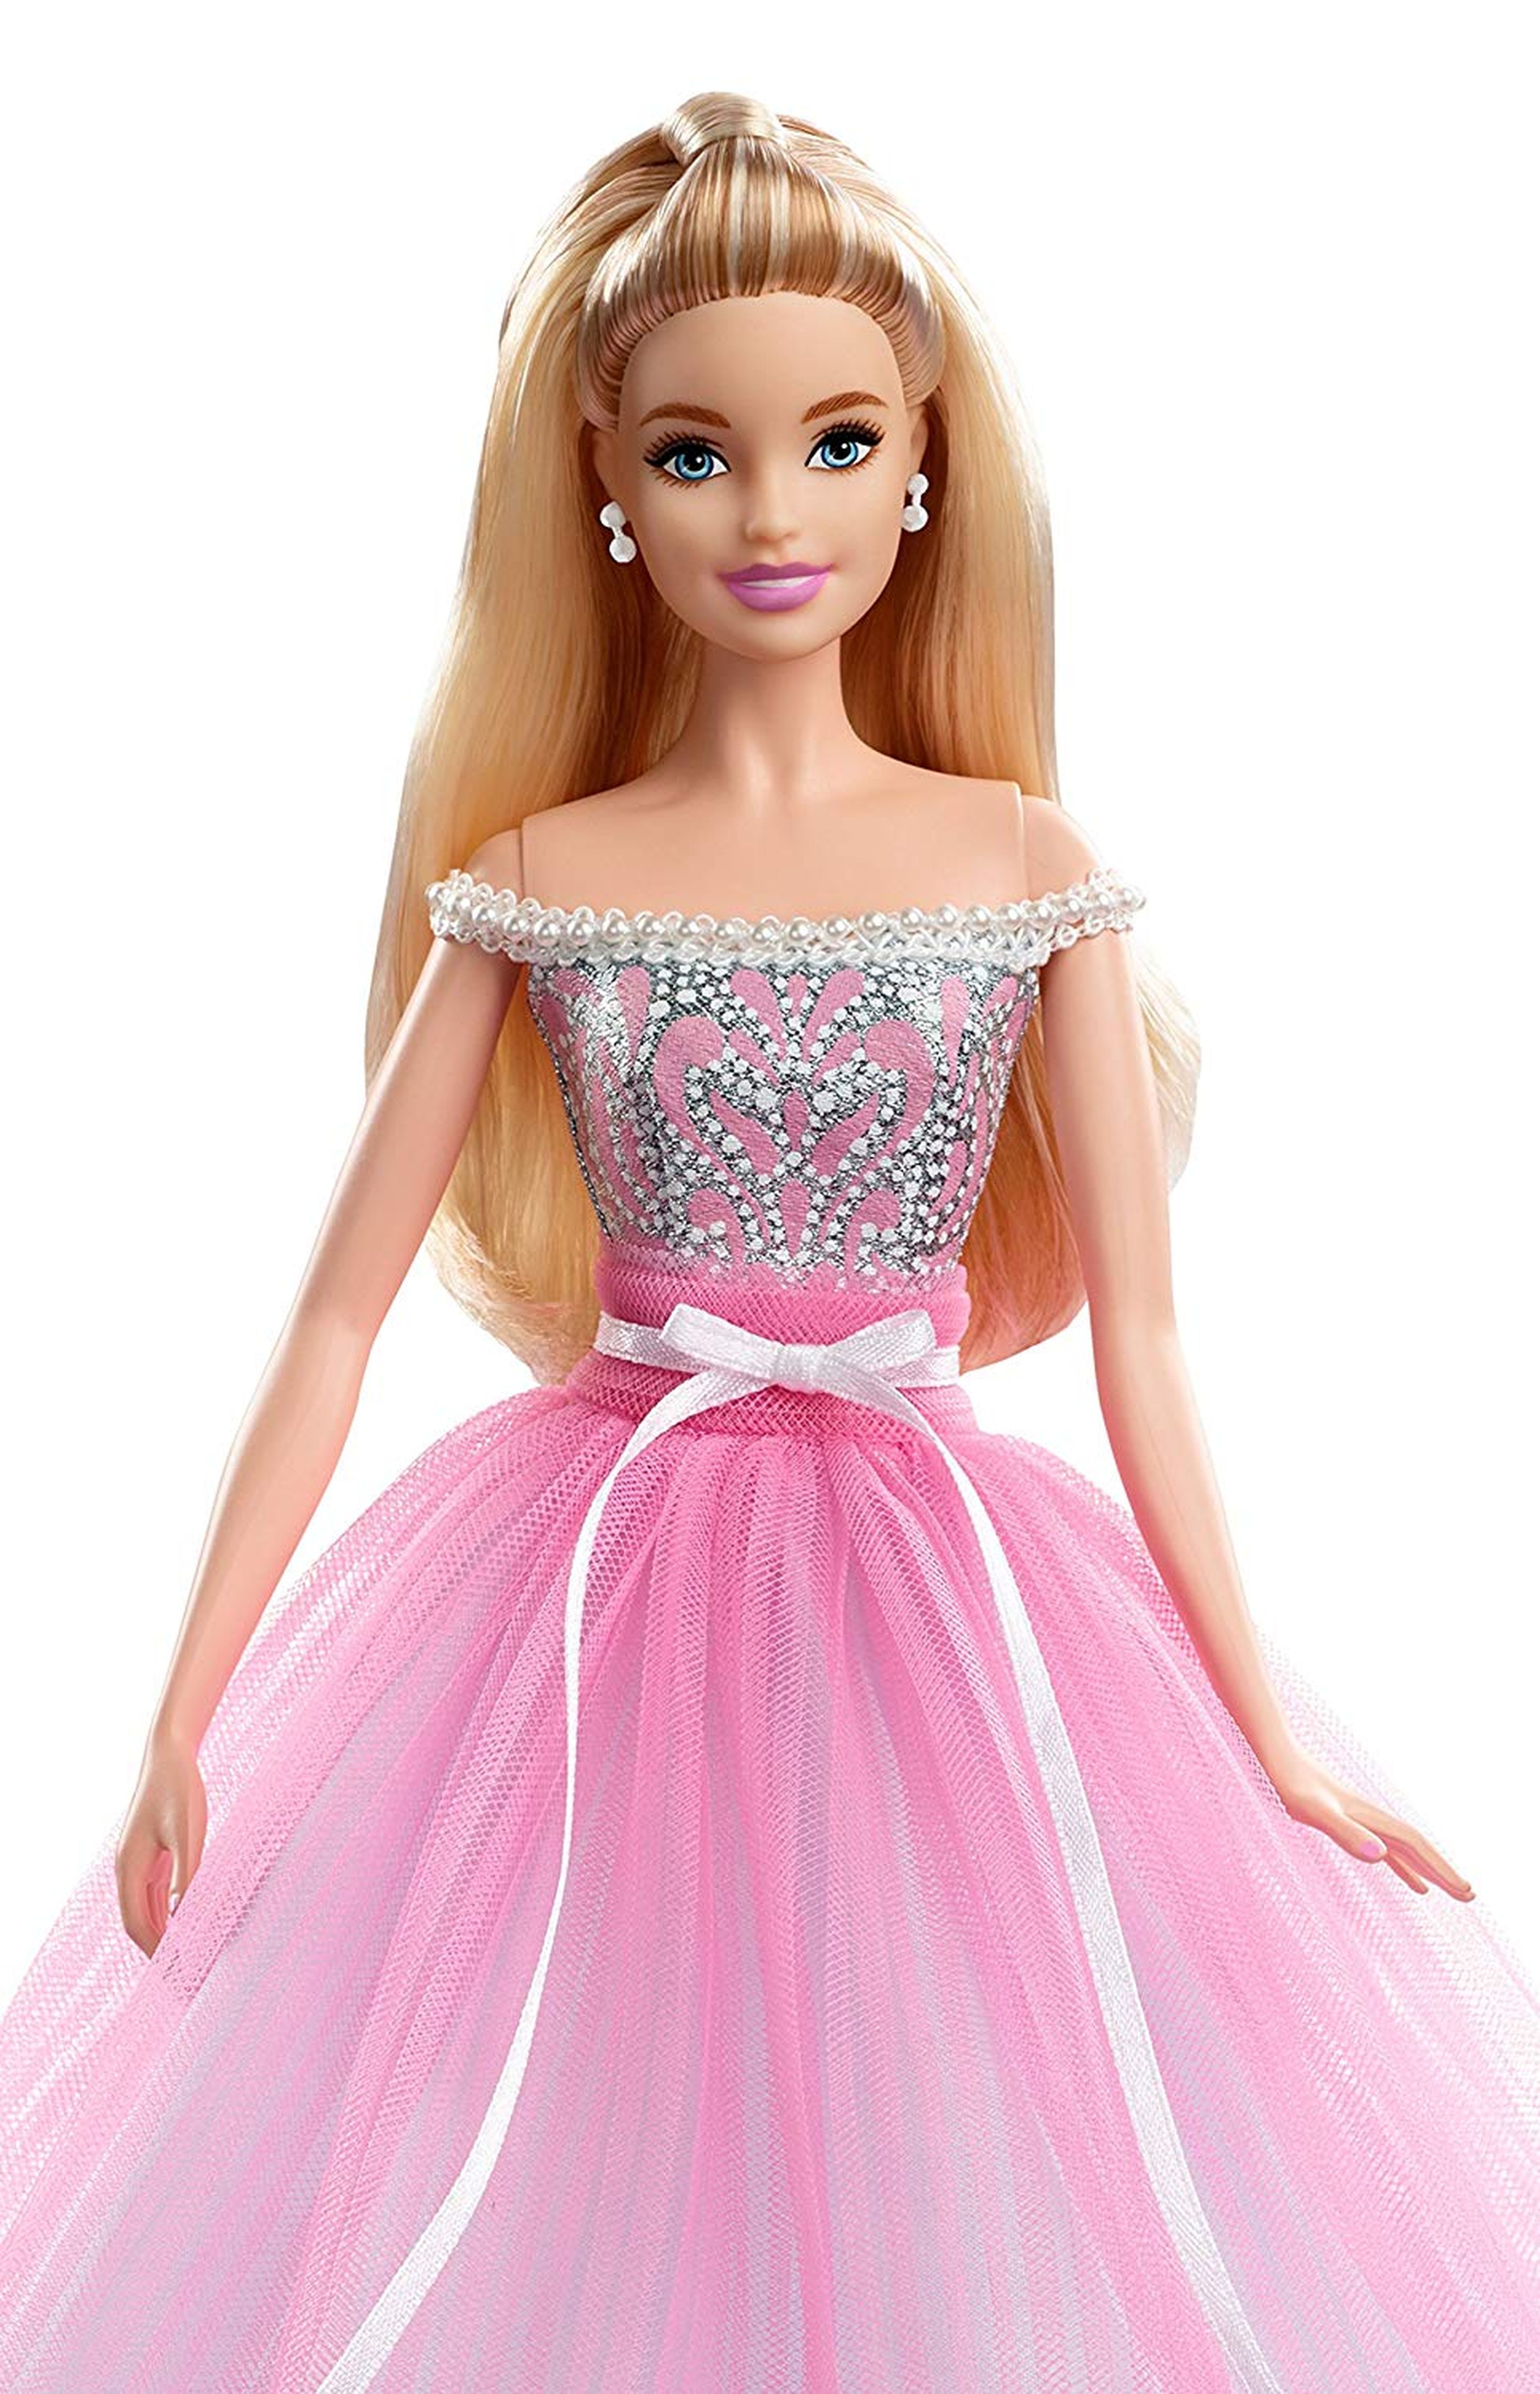 Barbie tendrá película de imagen real